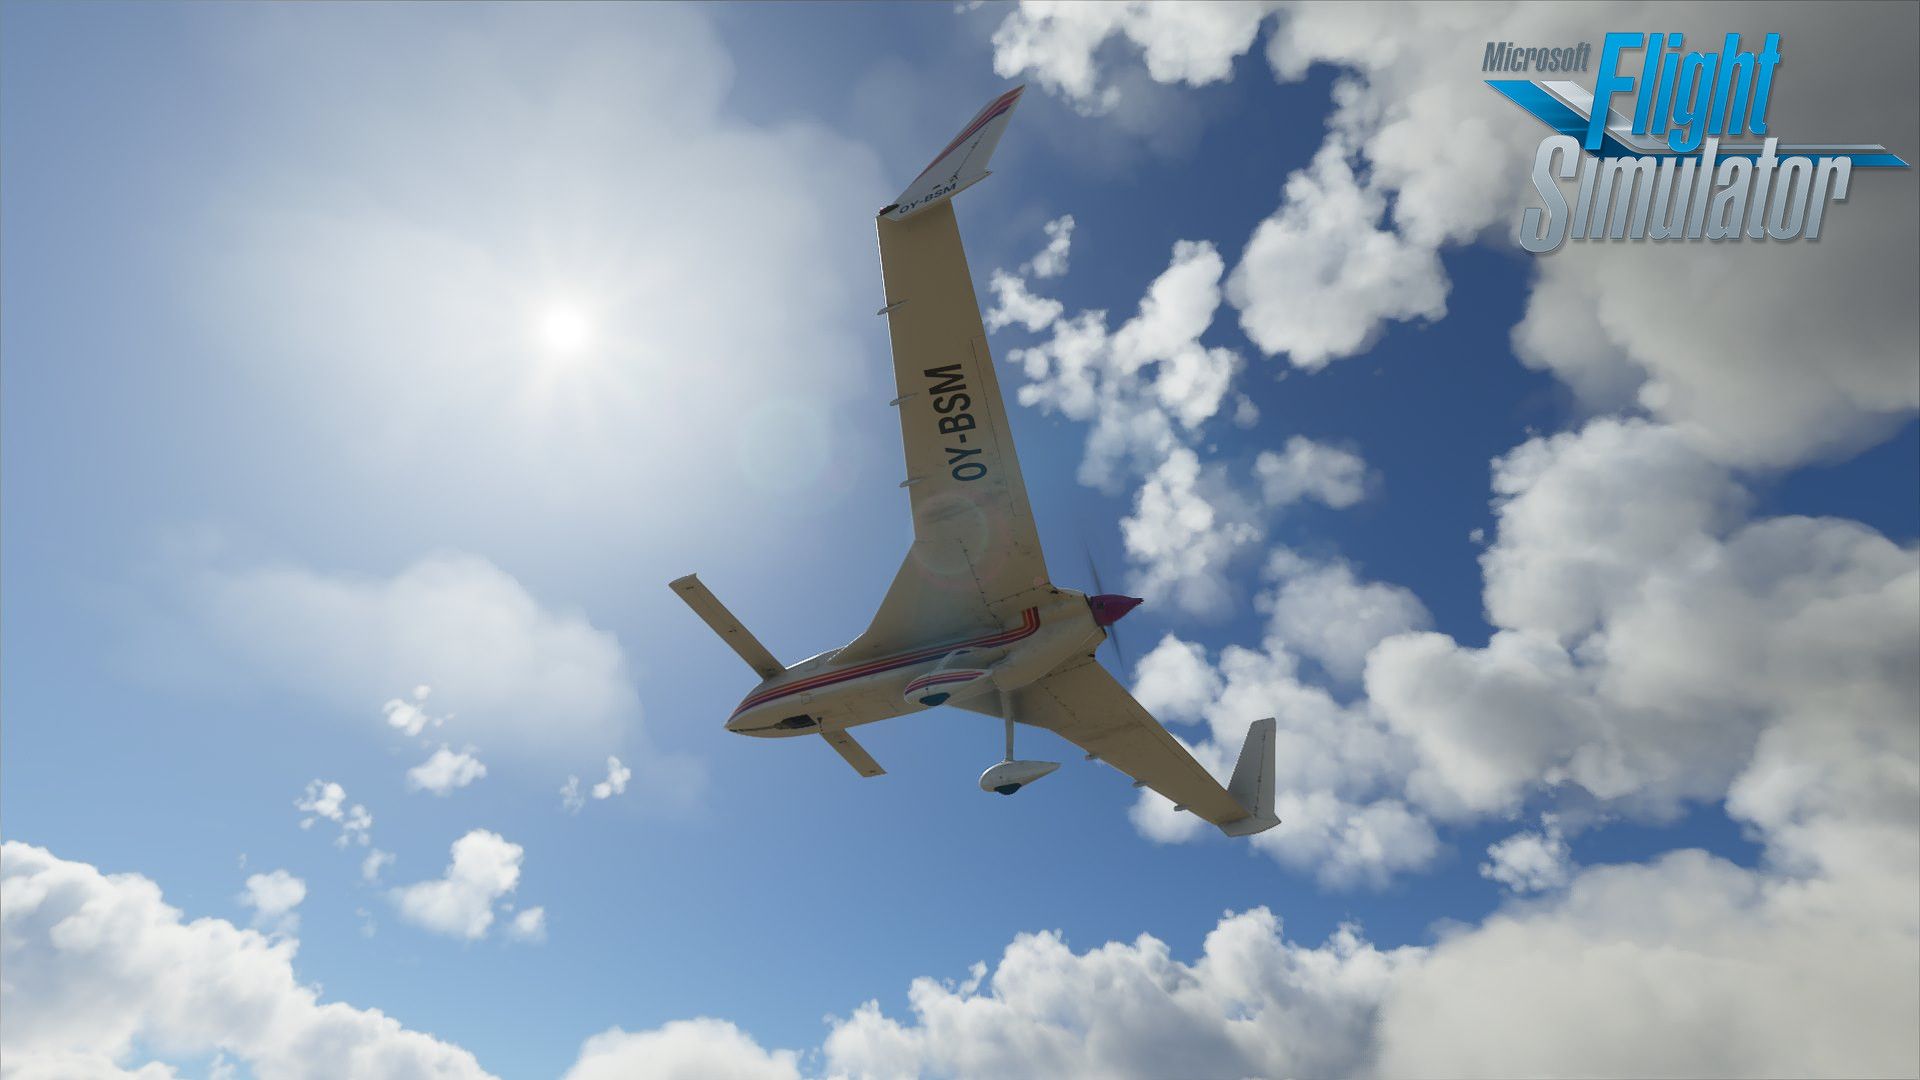 microsoft flight simulator 2015 download buy